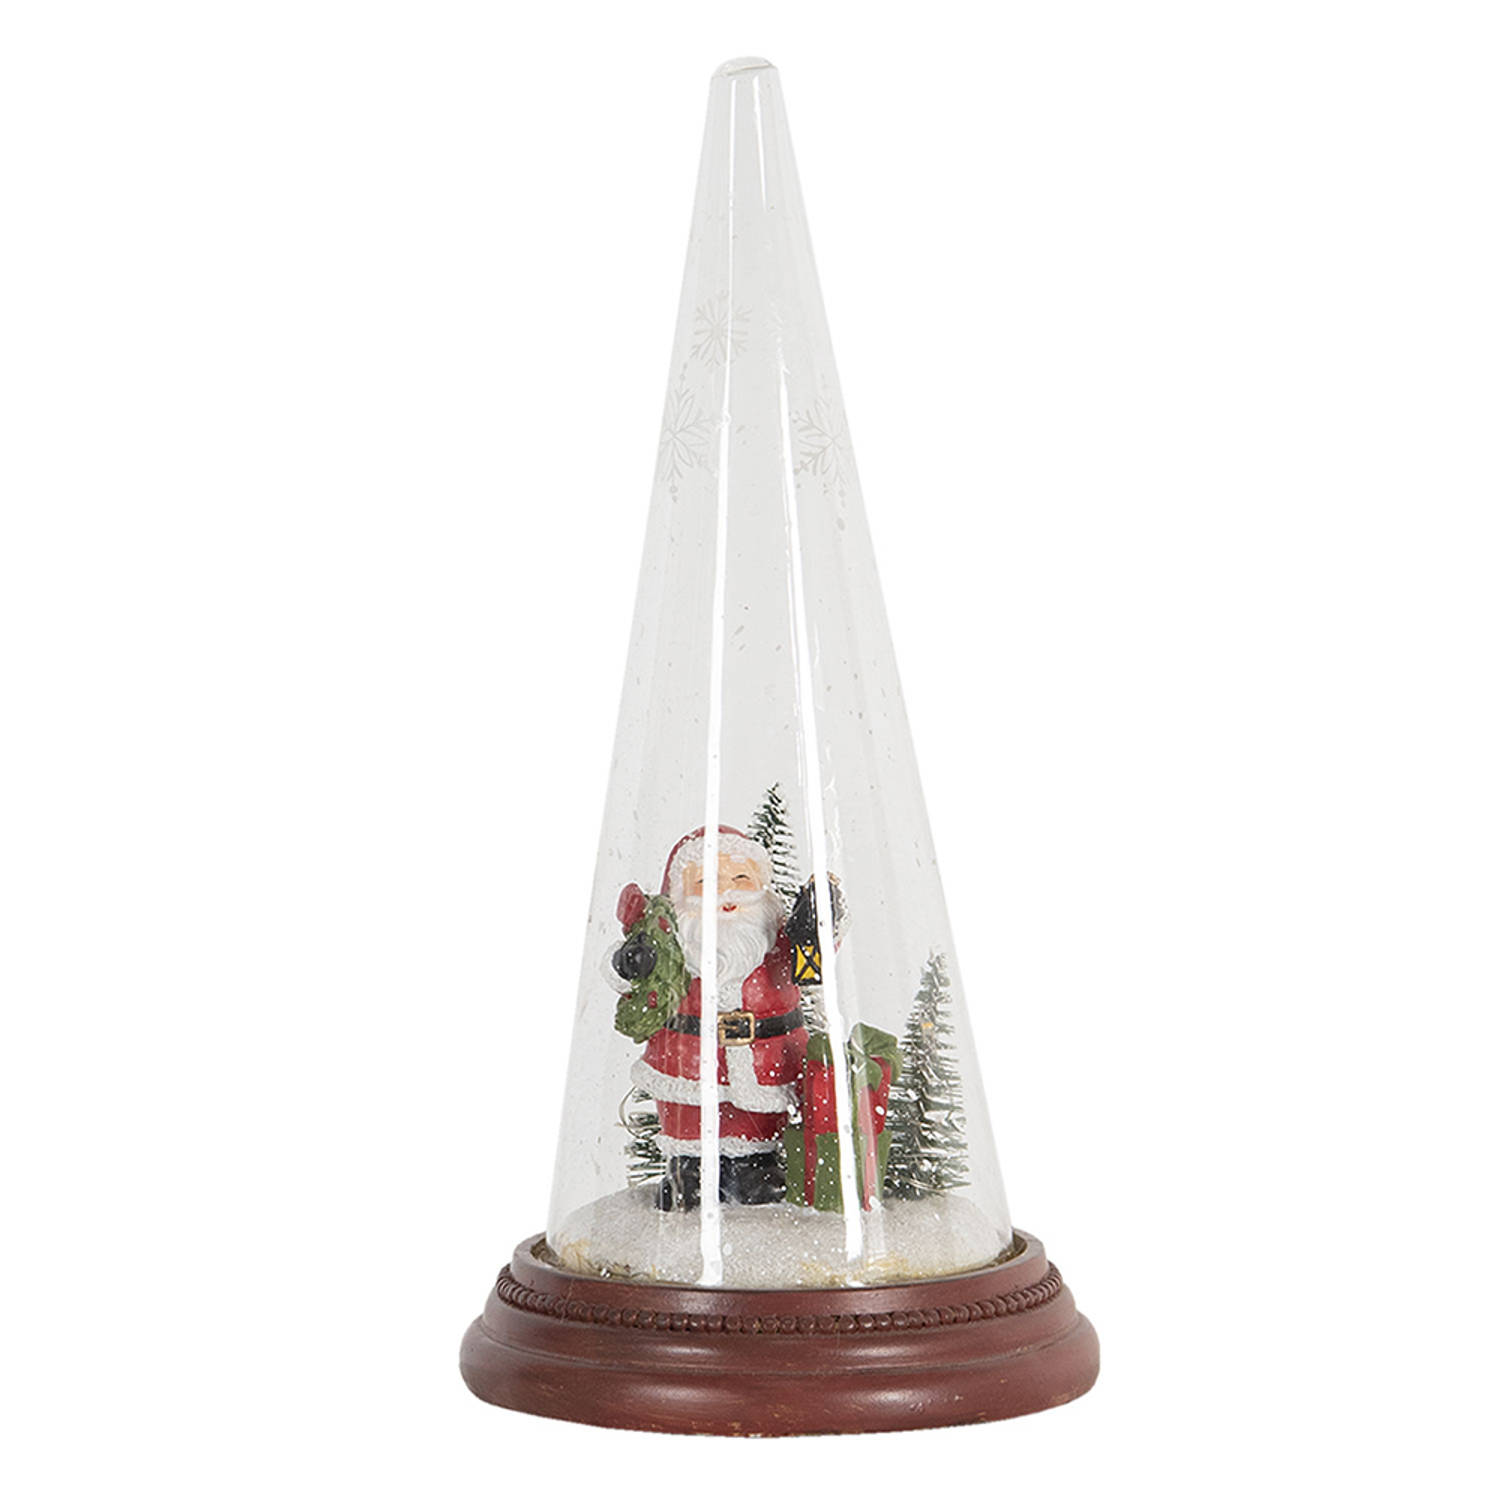 HAES DECO - Decoratieve stolp met kerstdecoratie Kerstman en houten voet, diameter 13 cm en hoogte 27 cm - ST6PR2991HS